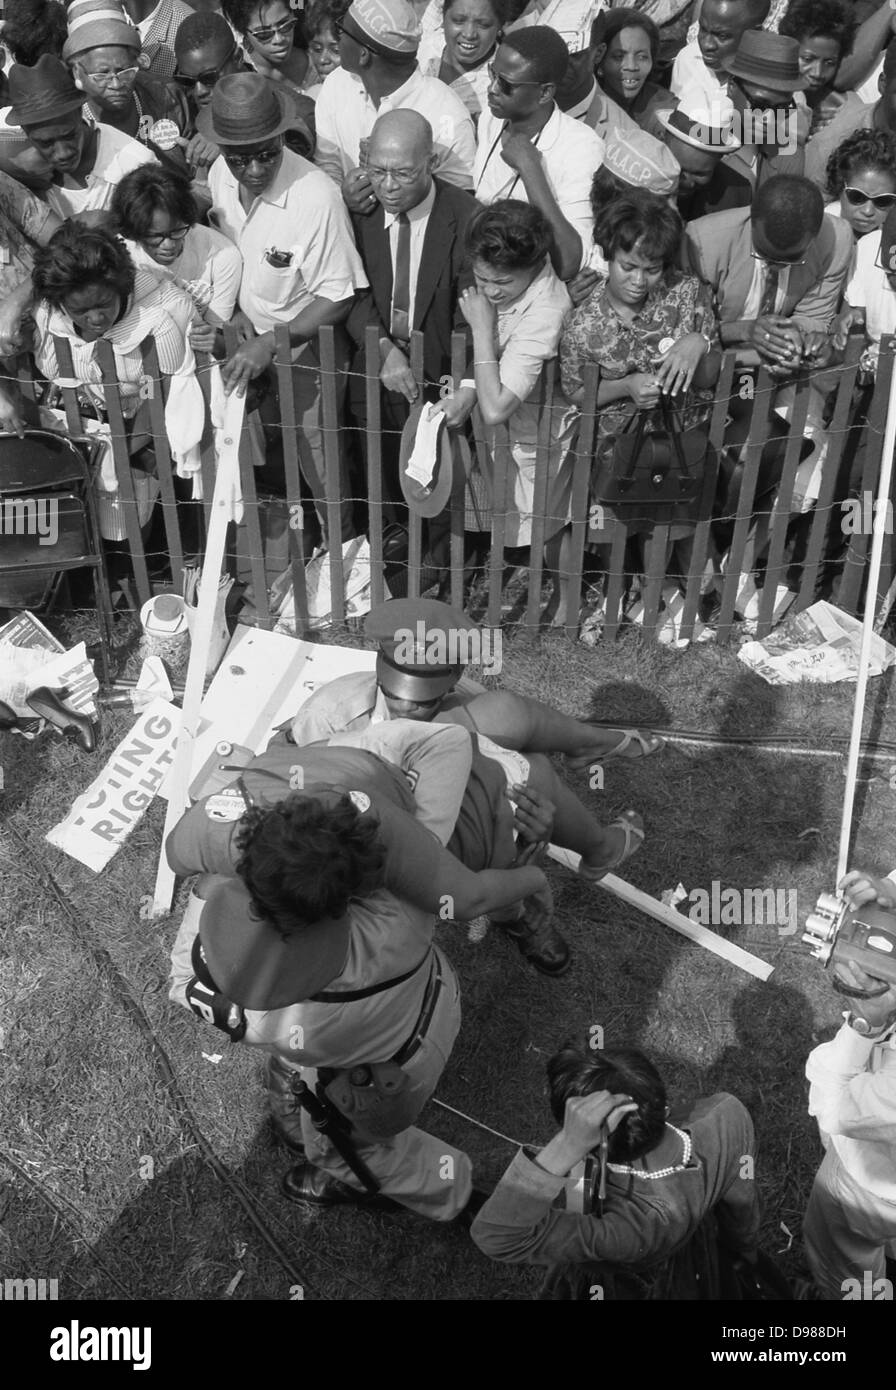 Manifestation à Washington, D.C. photographie montre une foule d'Américains africains derrière une clôture de tempête avec la police transportant une femme de l'autre côté, 28 août 1963. Marion S.Trikosko, photographe. Banque D'Images